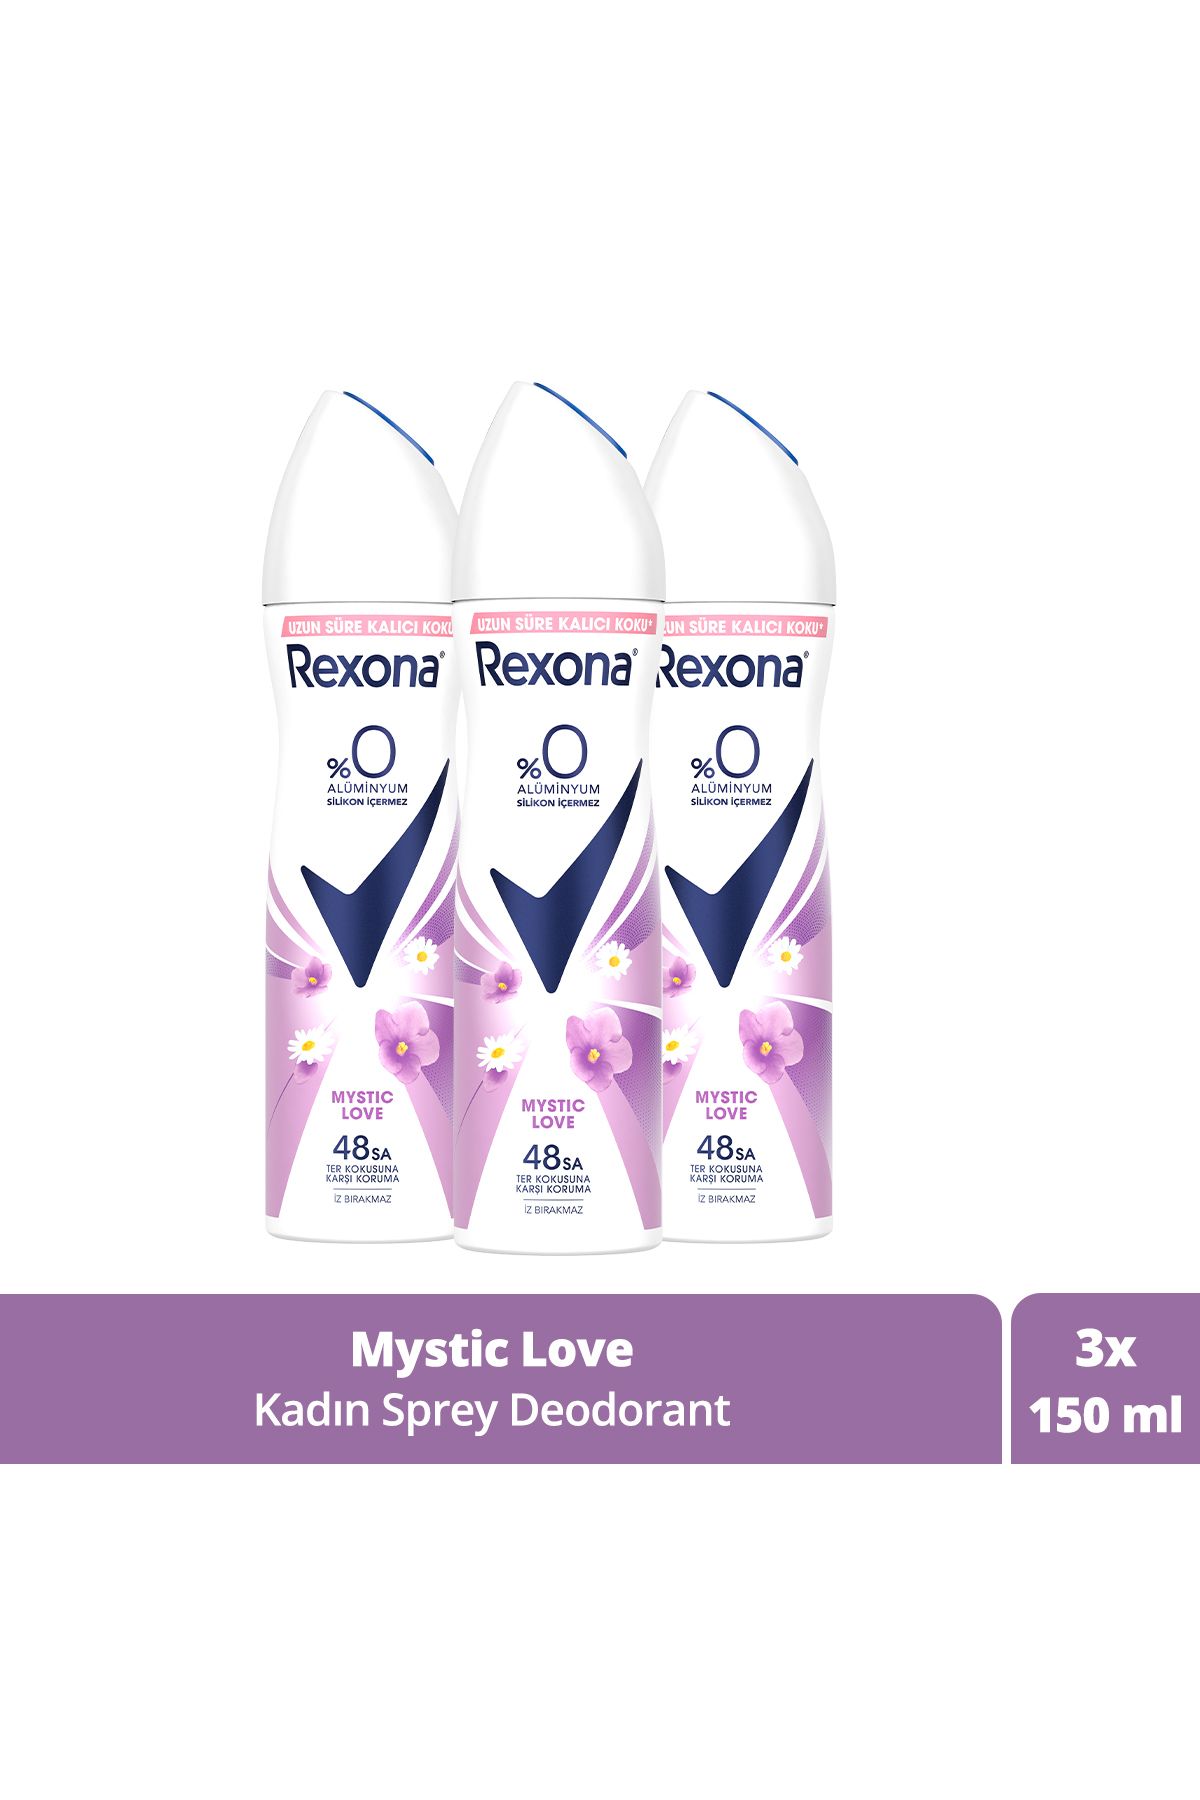 Rexona Kadın Sprey Deodorant Mystic Love %0 Alüminyum 48 Saat Ter Kokusuna Karşı Koruma 150 ml X3